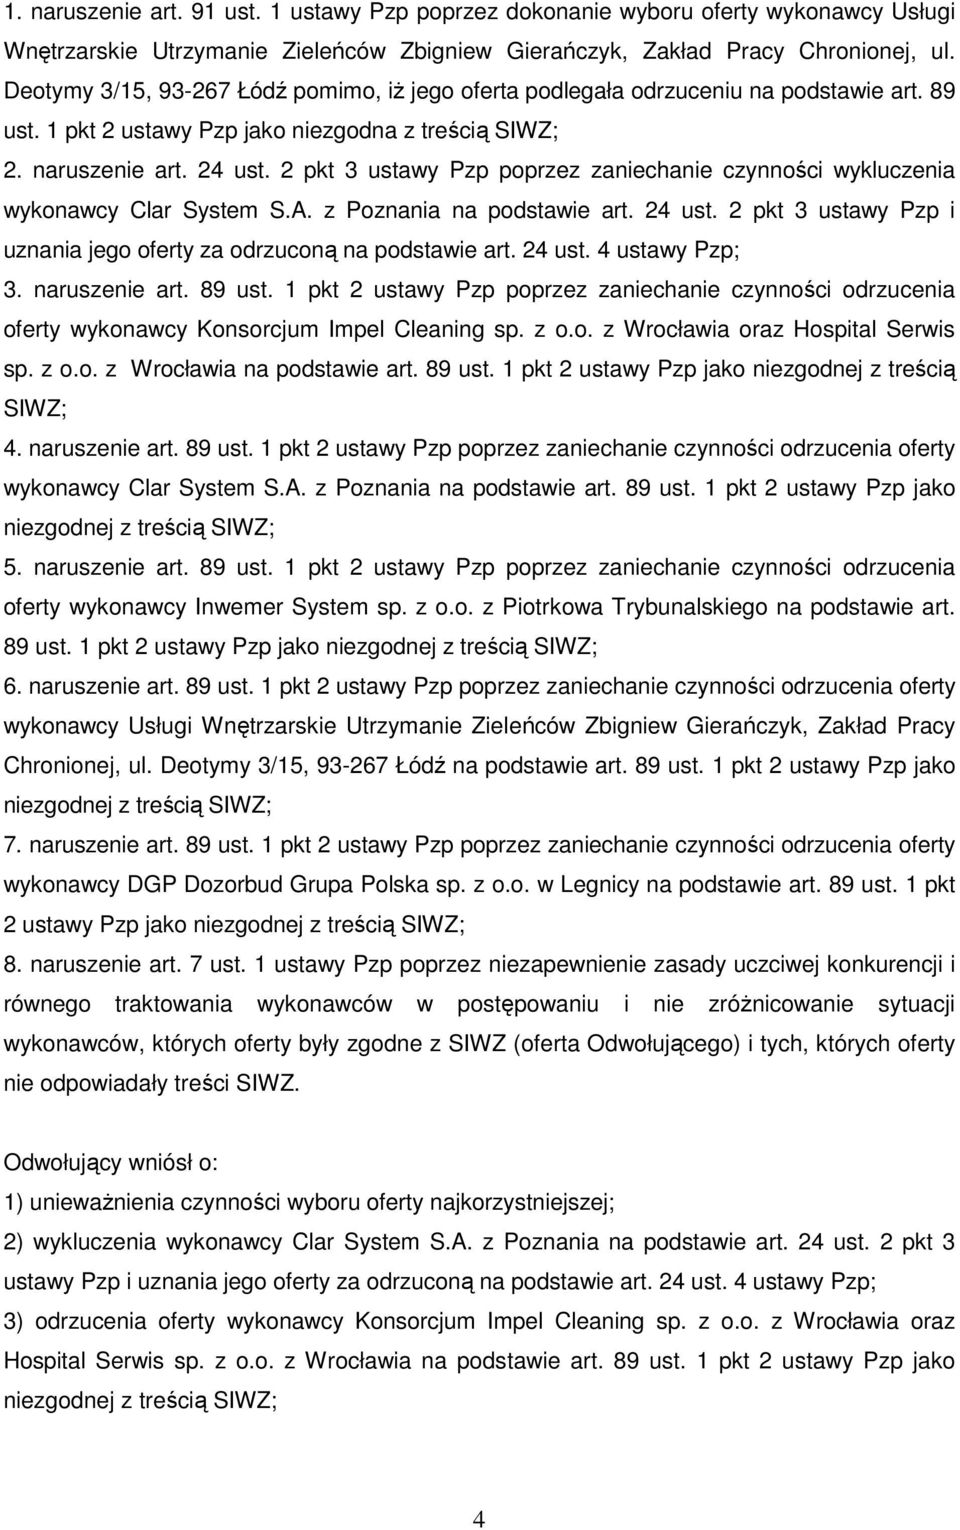 2 pkt 3 ustawy Pzp poprzez zaniechanie czynności wykluczenia wykonawcy Clar System S.A. z Poznania na podstawie art. 24 ust. 2 pkt 3 ustawy Pzp i uznania jego oferty za odrzuconą na podstawie art.